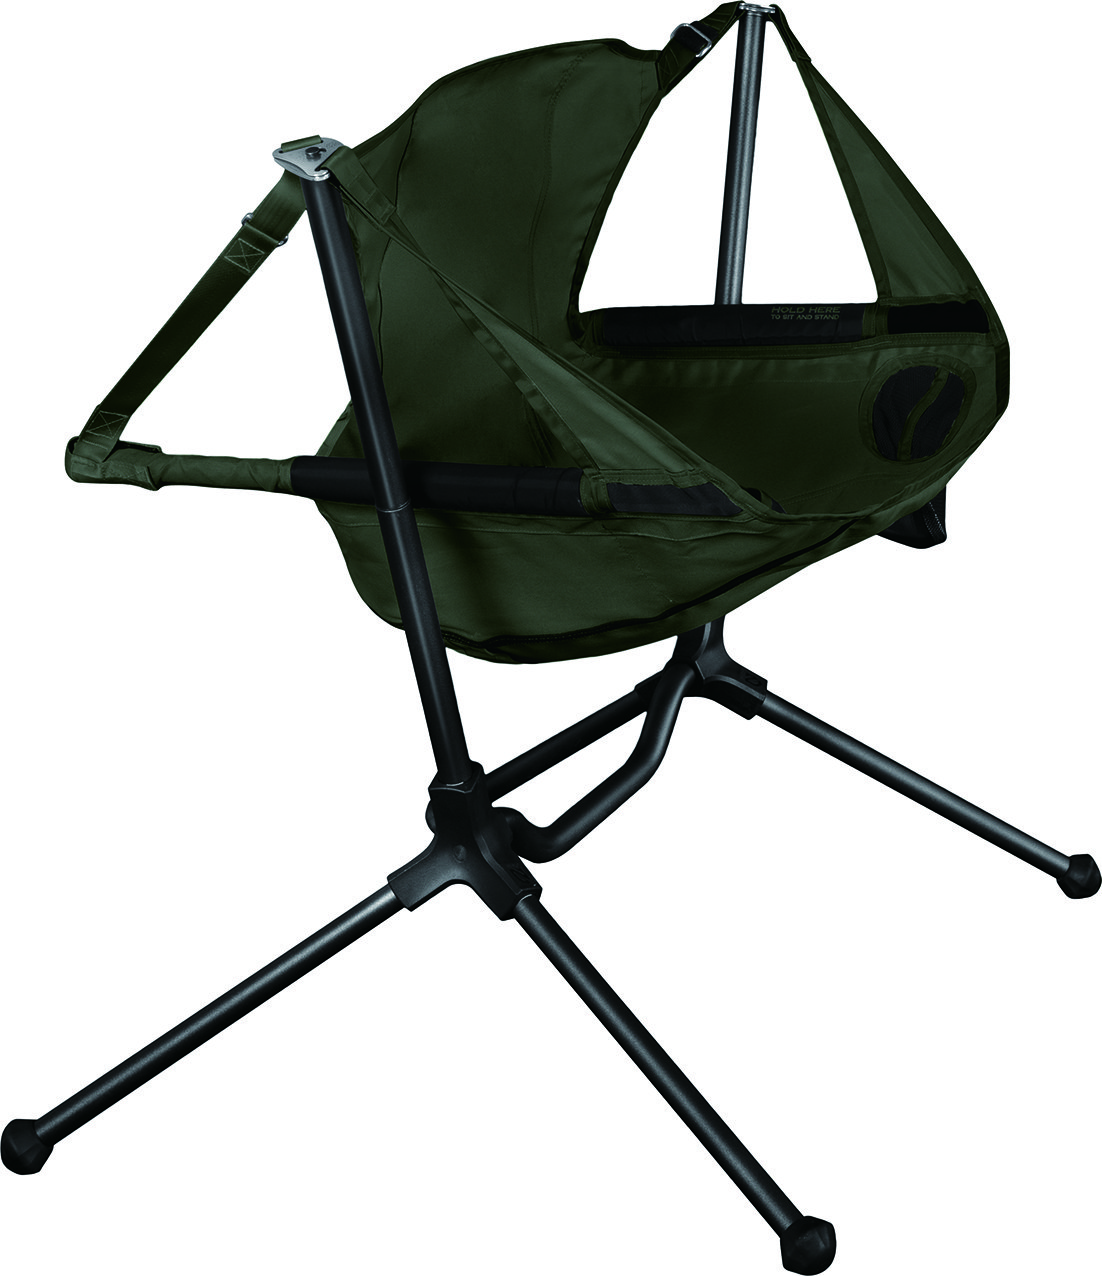 Viaggio+ アウトドア チェア 折りたたみ ウッド キャンピングチェア 木製 椅子 イス コンパクト ローチェア キャンプ 肘掛け (